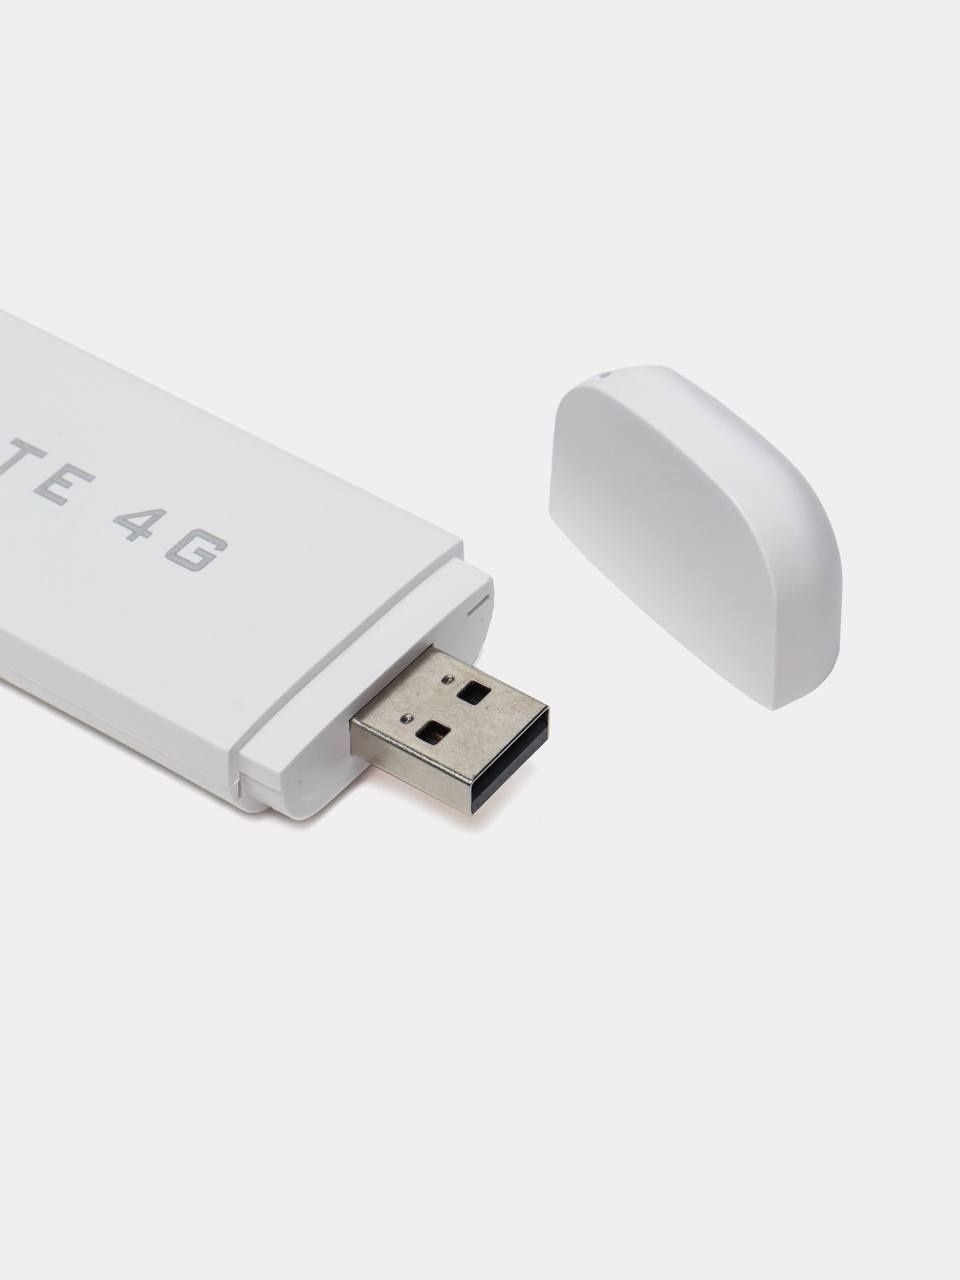 USB-накопитель LTE 4G, интегрированный с точками доступа Wi-